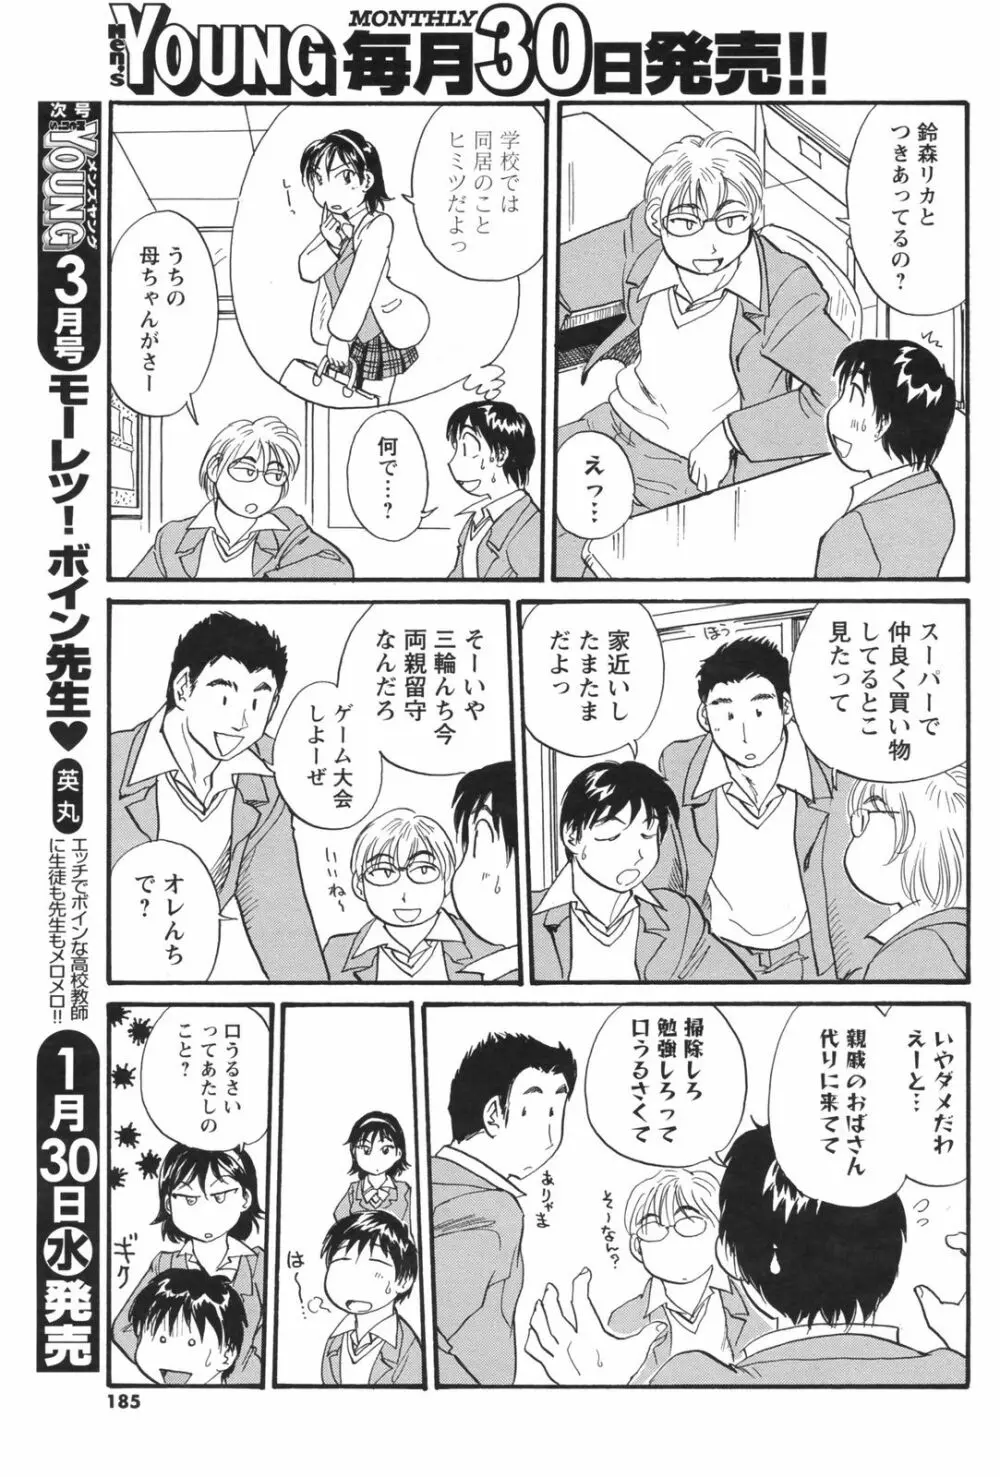 メンズヤングスペシャルIKAZUCHI雷 Vol.5 2008年3月号増刊 185ページ